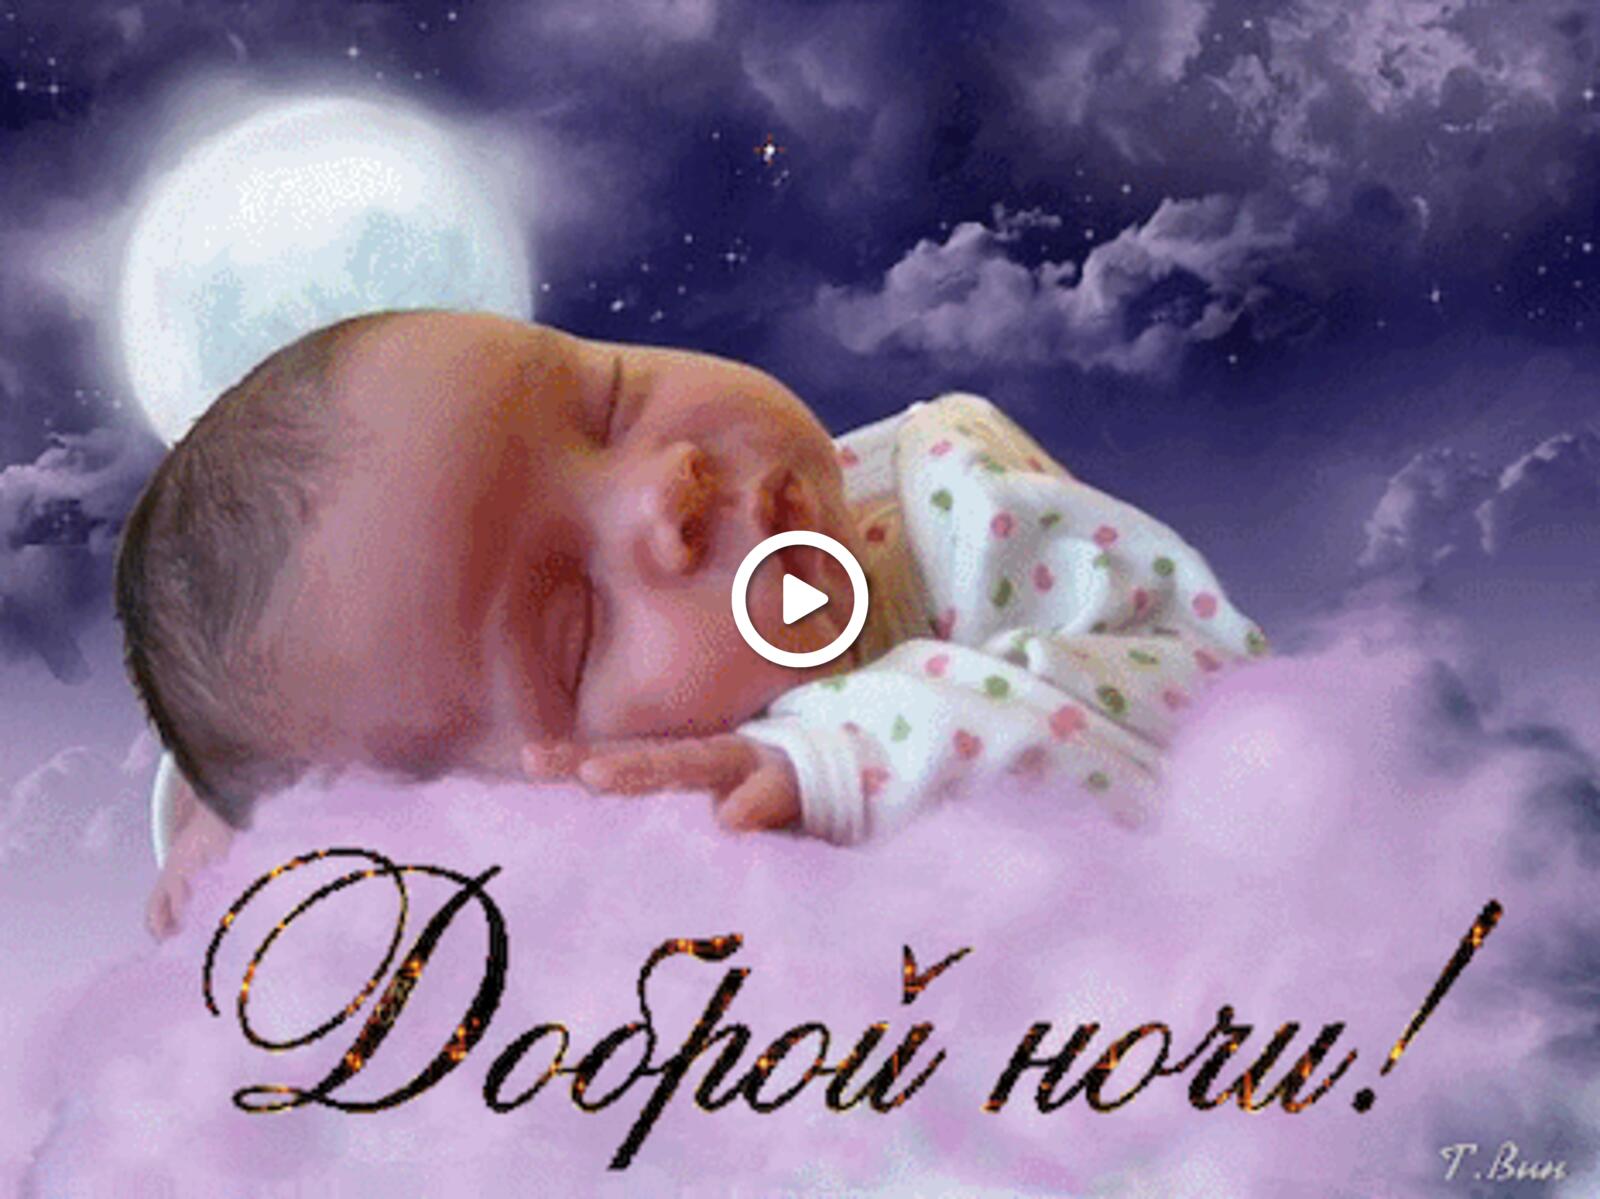 一张以晚安 孩子 婴幼儿为主题的明信片